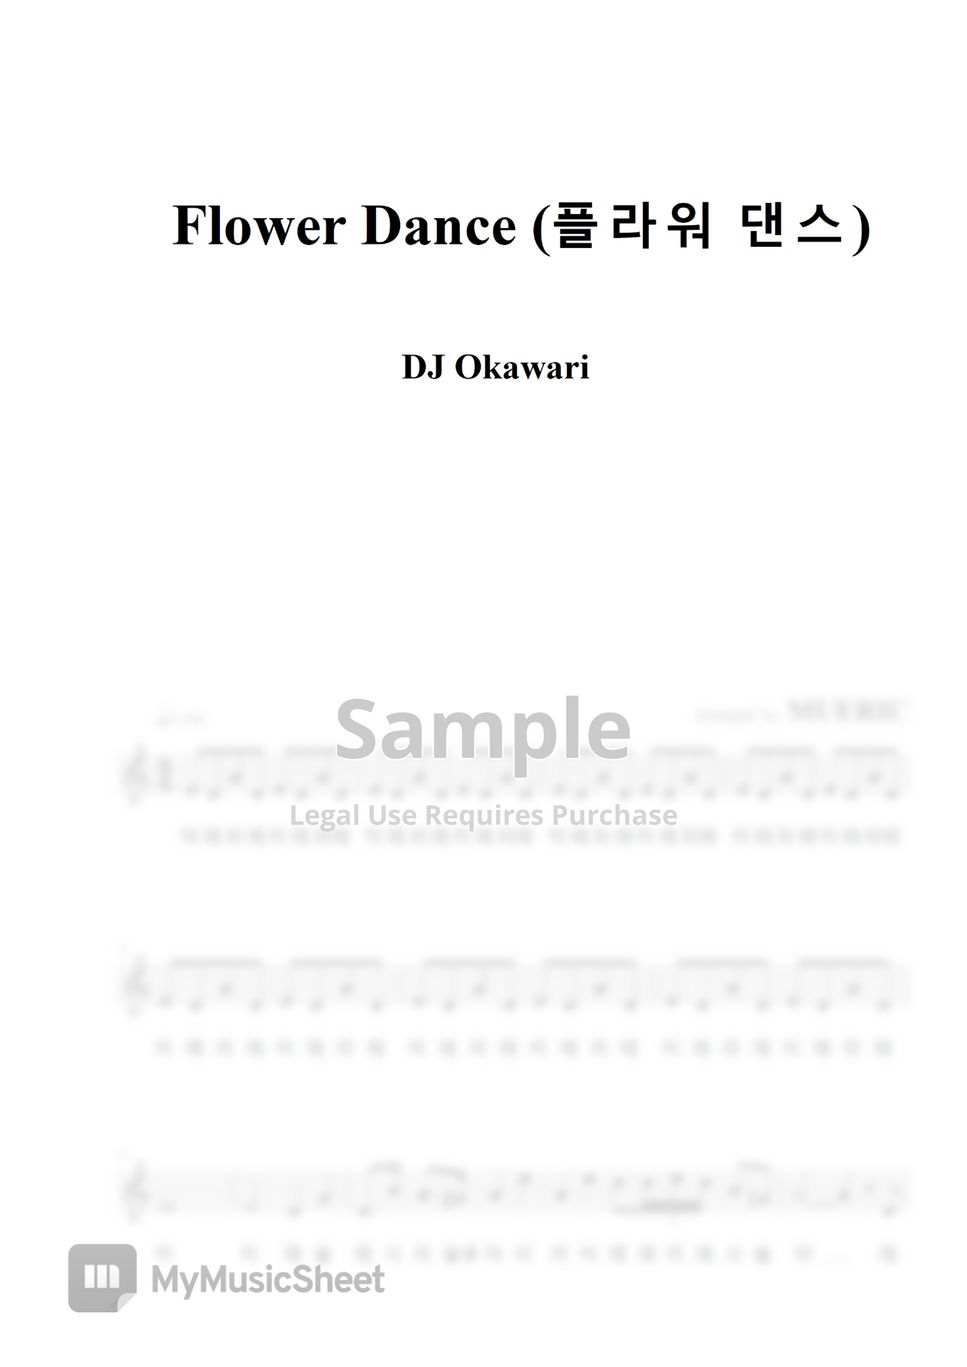 [리코더] 플라워 댄스 - DJ Okawari (For Recorder) by 뮤에릭 MUERIC